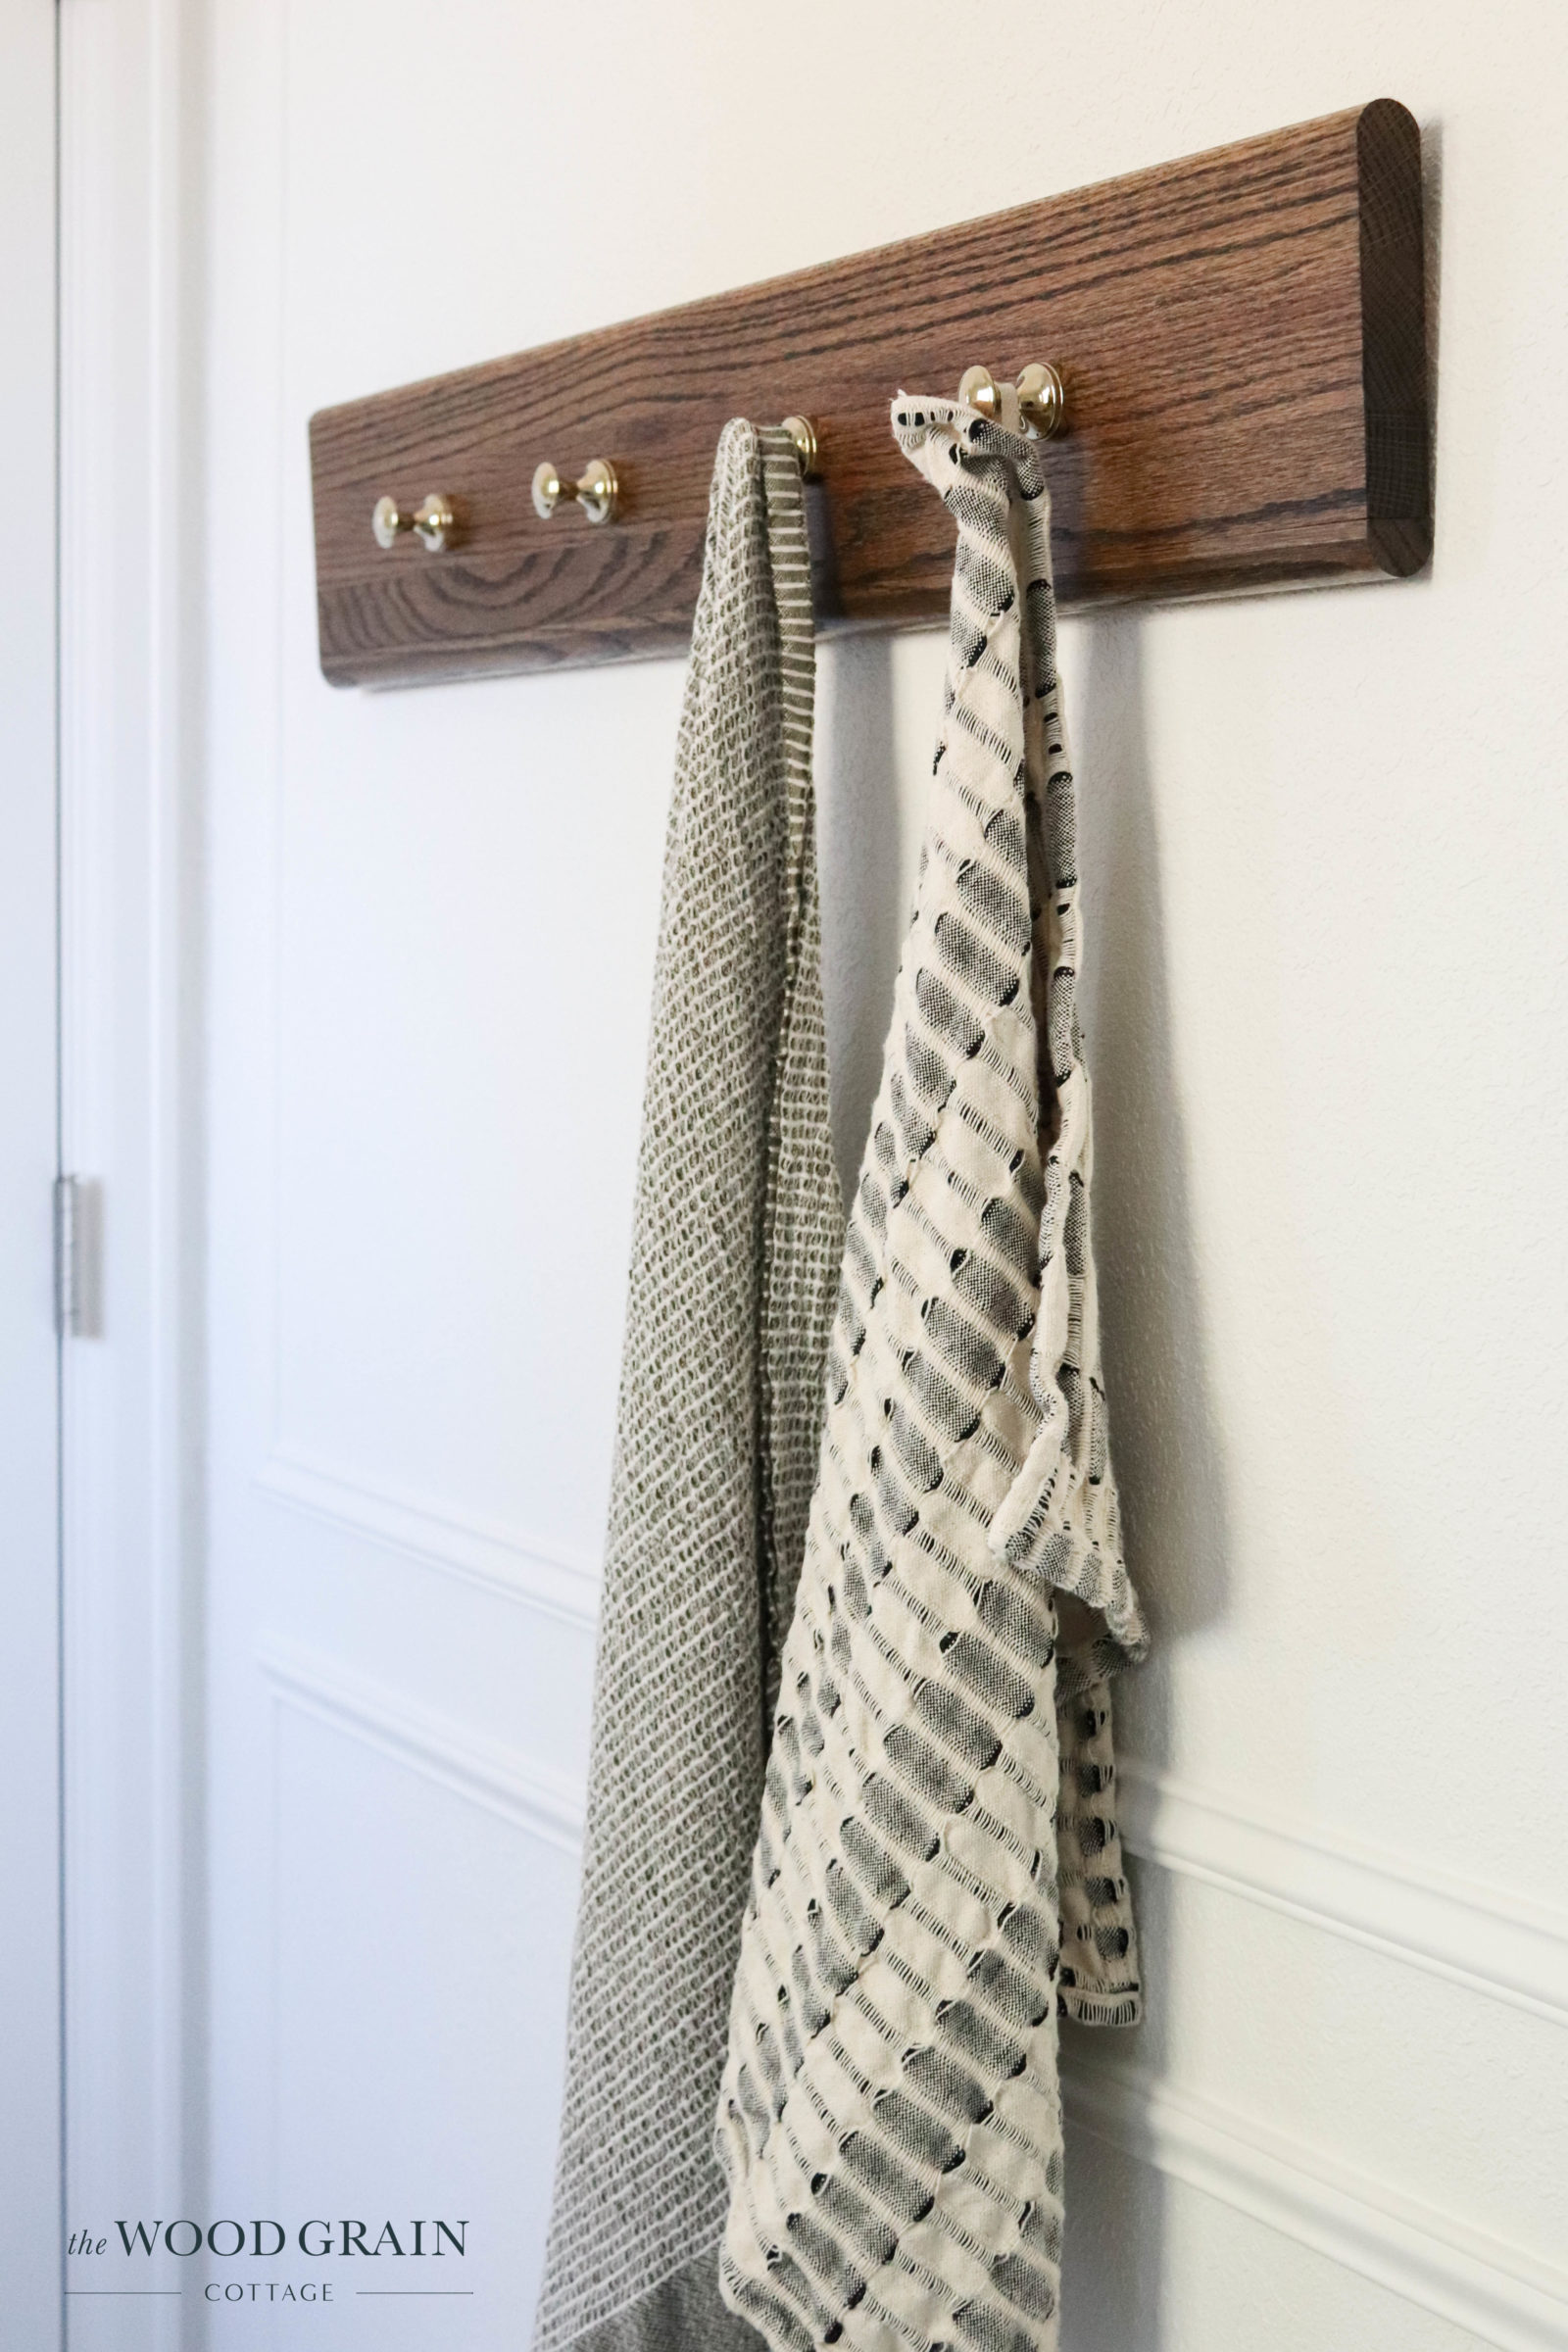 DIY Towel Hook Rack - The Wood Grain Cottage